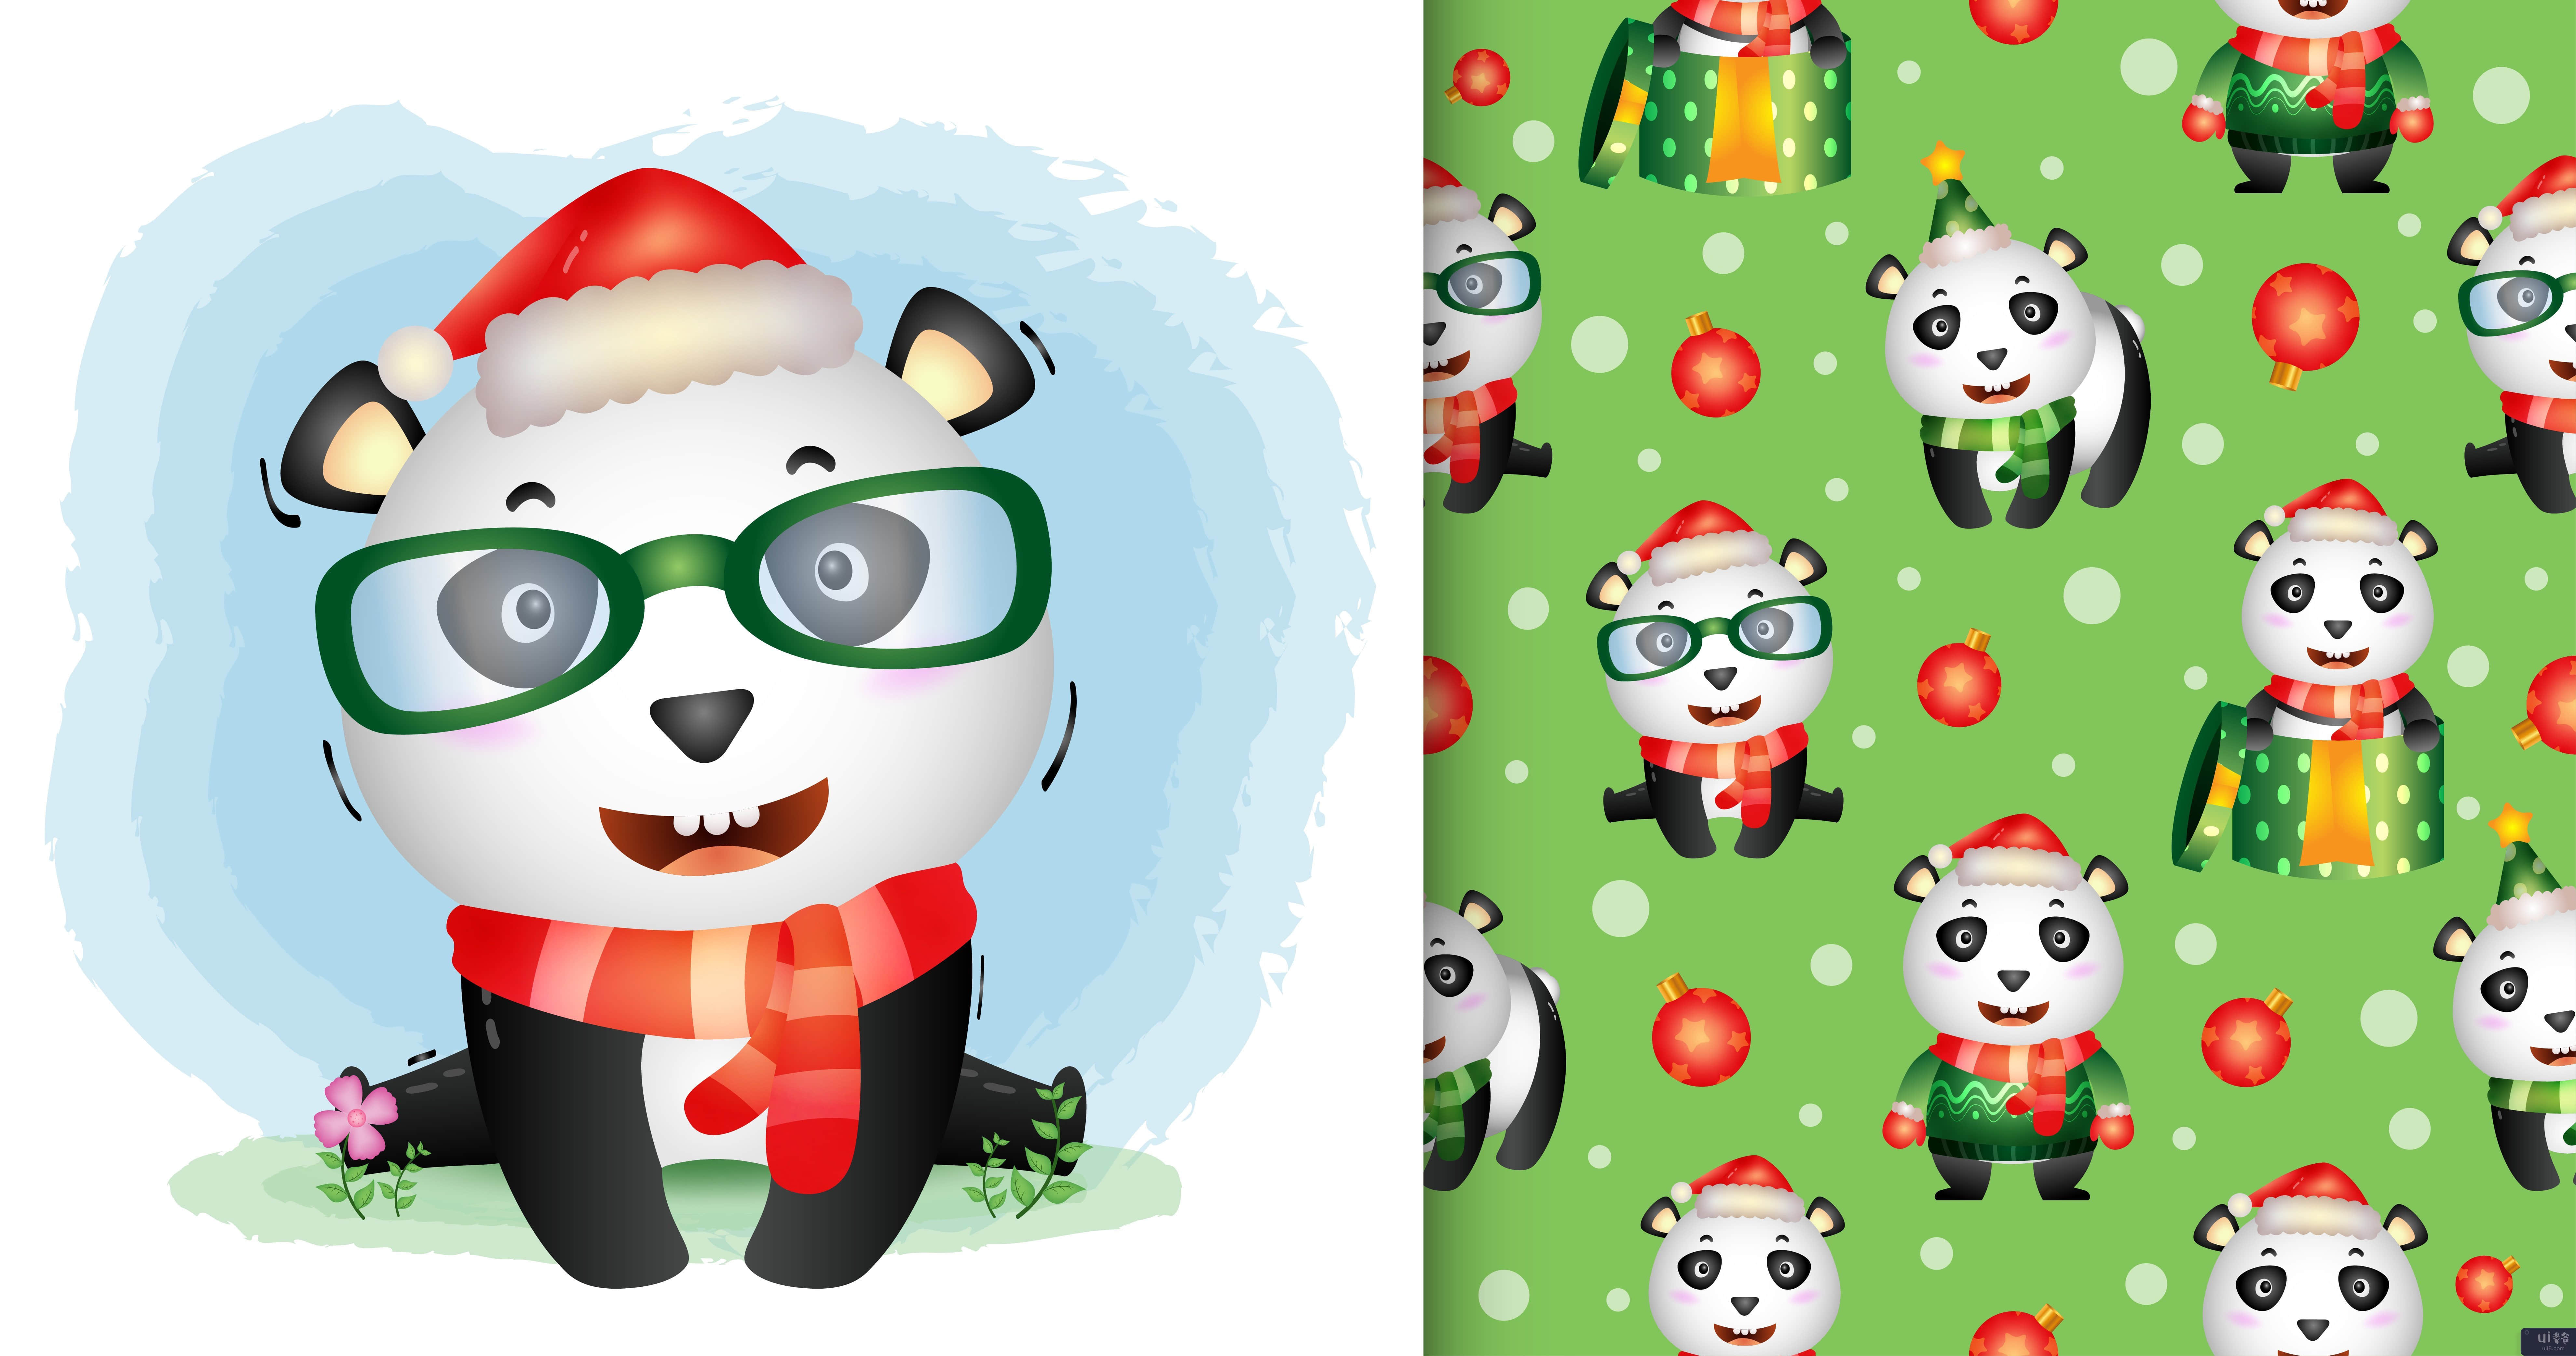 可爱的熊猫圣诞人物系列，无缝图案(a cute panda christmas characters collection, seamless pattern)插图2